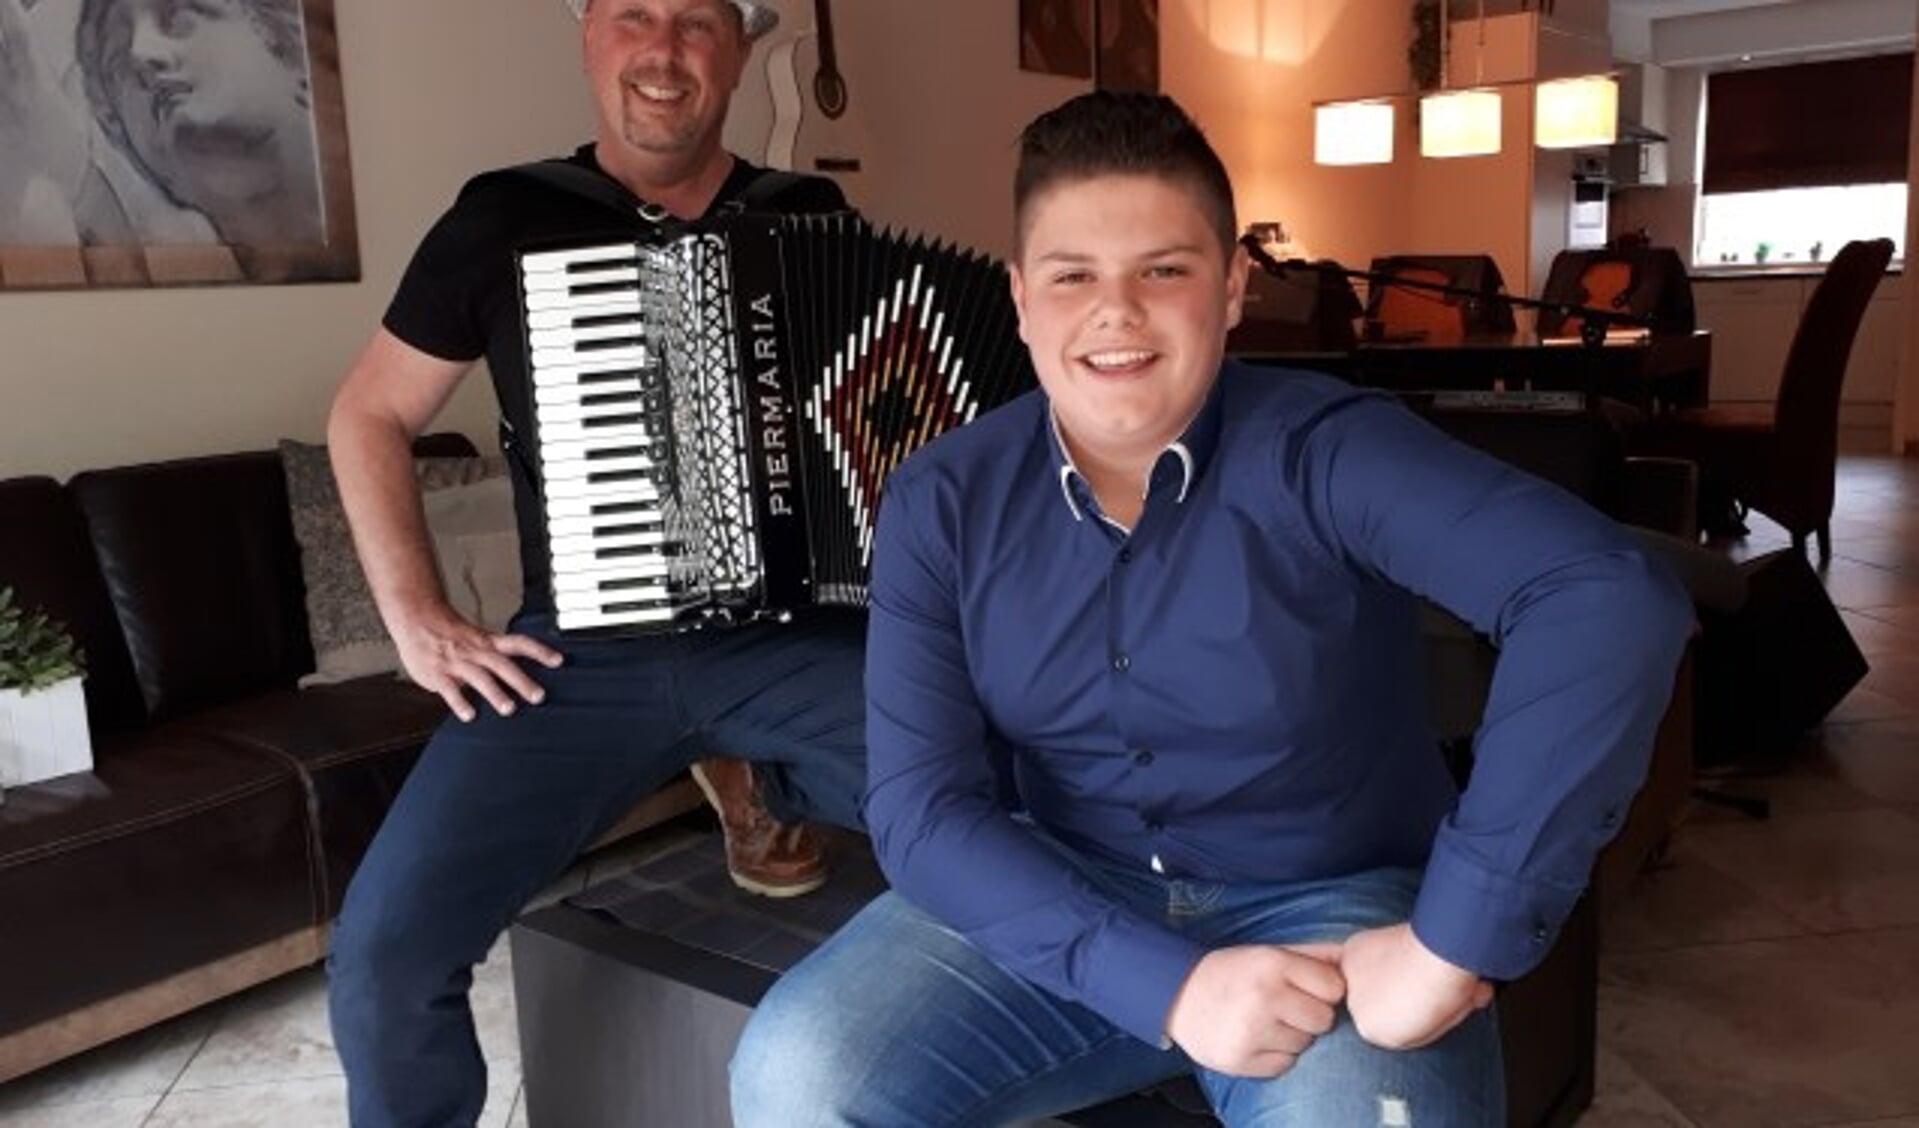 De Veenendaalse zanger Justen de Wildt (14) treedt op 9 mei as. op in het Cultureel Café Veenendaal, waar hij begeleid wordt door Kees Schoeman op de accordeon. (Foto: Jaap Pilon) 